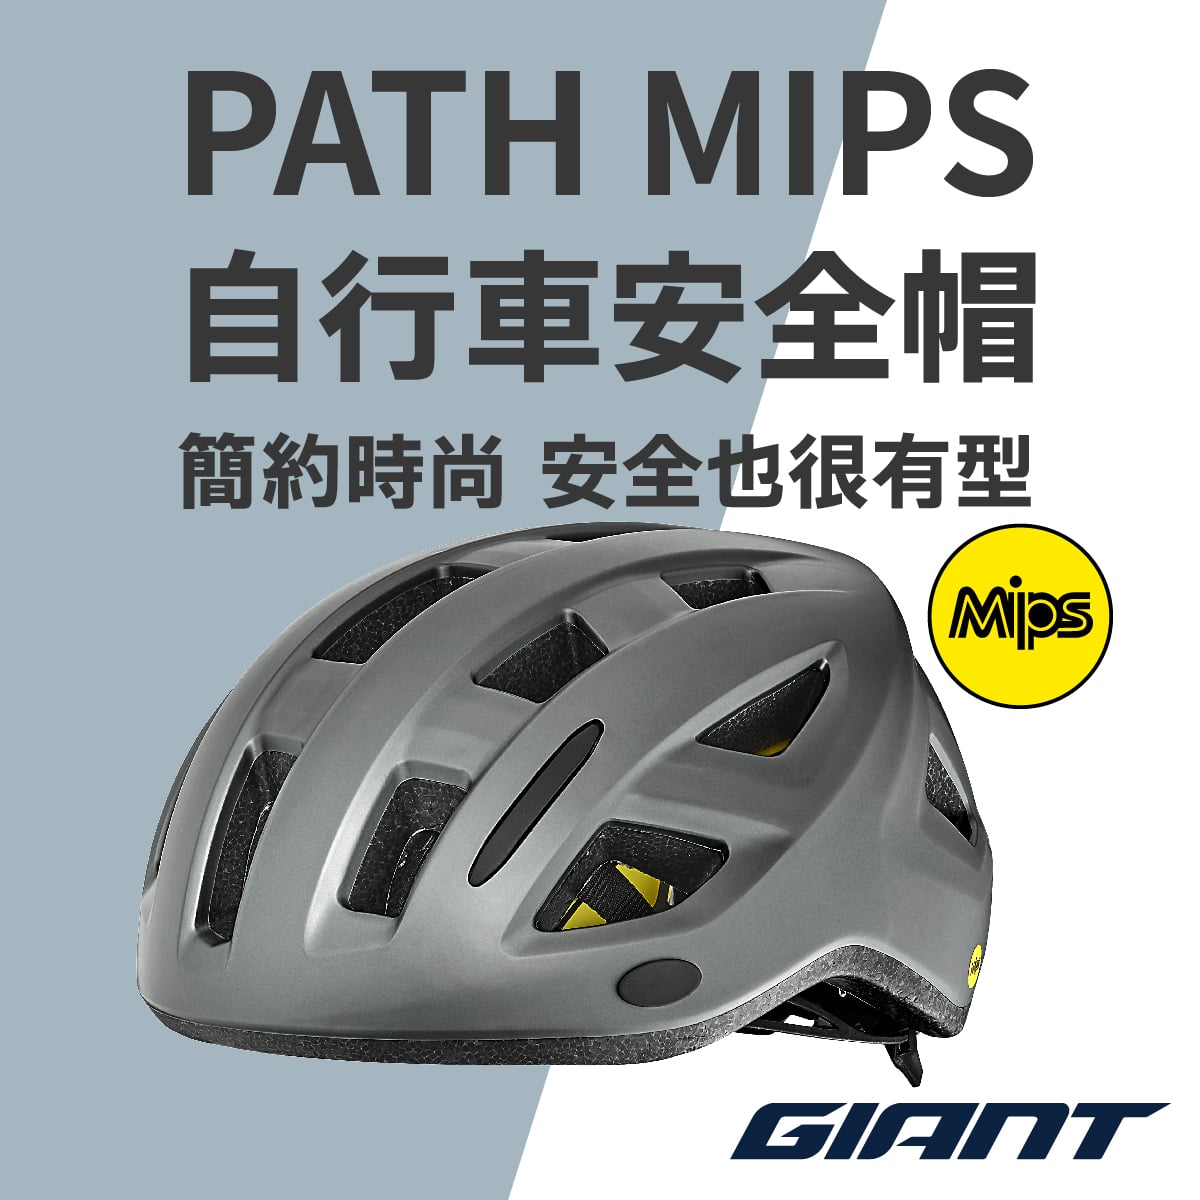 PATH MIPS 自行車安全帽 簡約 時尚 安全也很有型